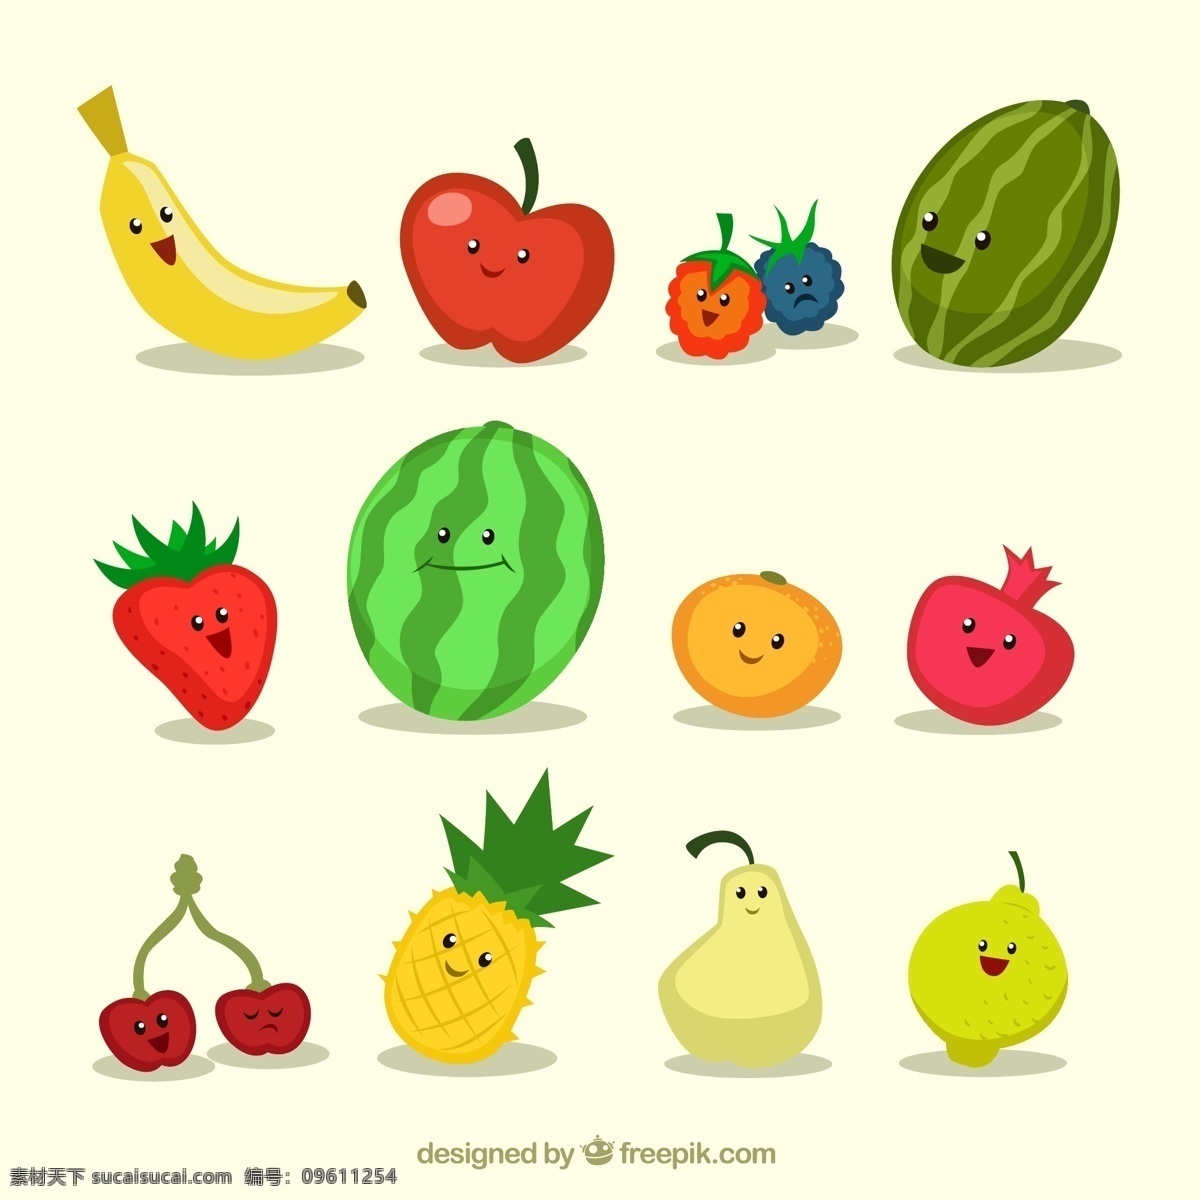 有趣水果 食品 健康 水果 快乐 苹果 橘子 草莓 柠檬 香蕉 趣味 有趣 菠萝 插图 樱桃 西瓜 石榴 图标 高清 源文件